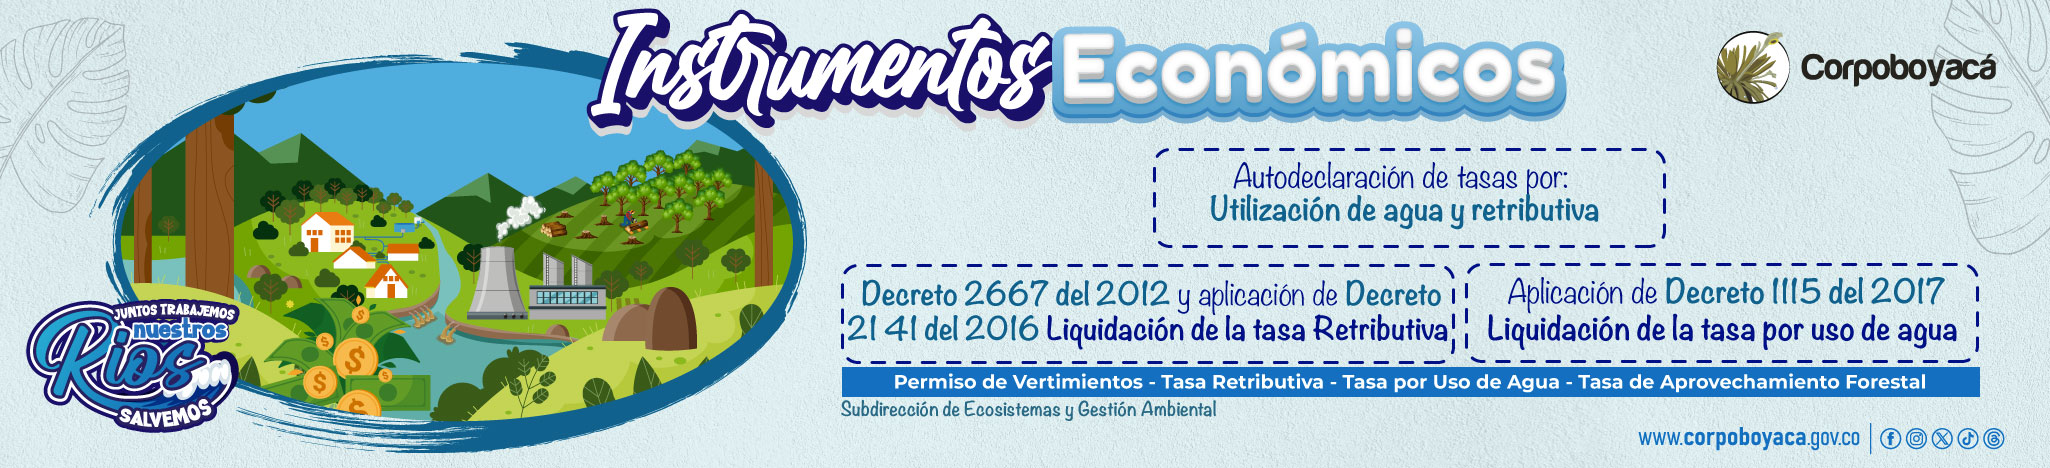 Banner Instrumentos Económicos